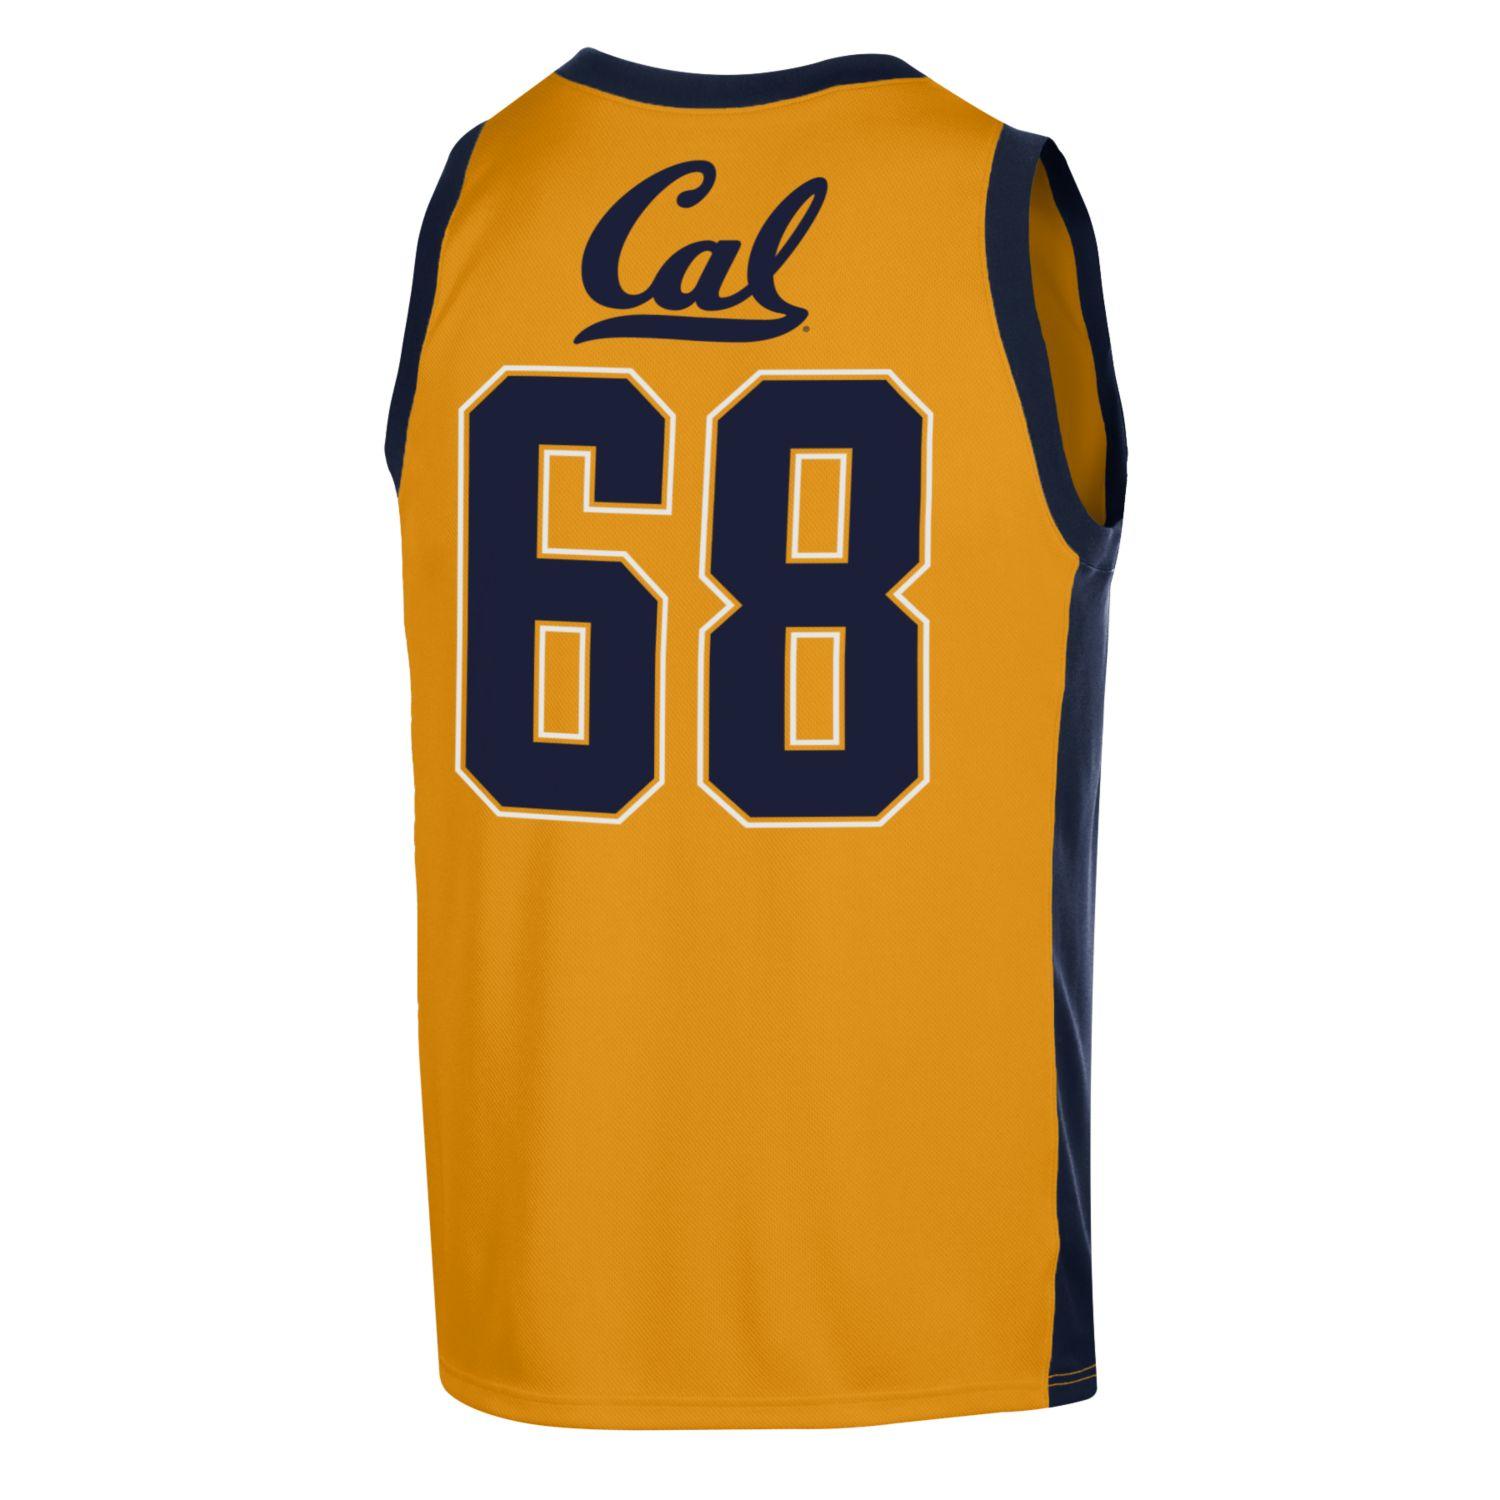 california golden bears basketball jersey